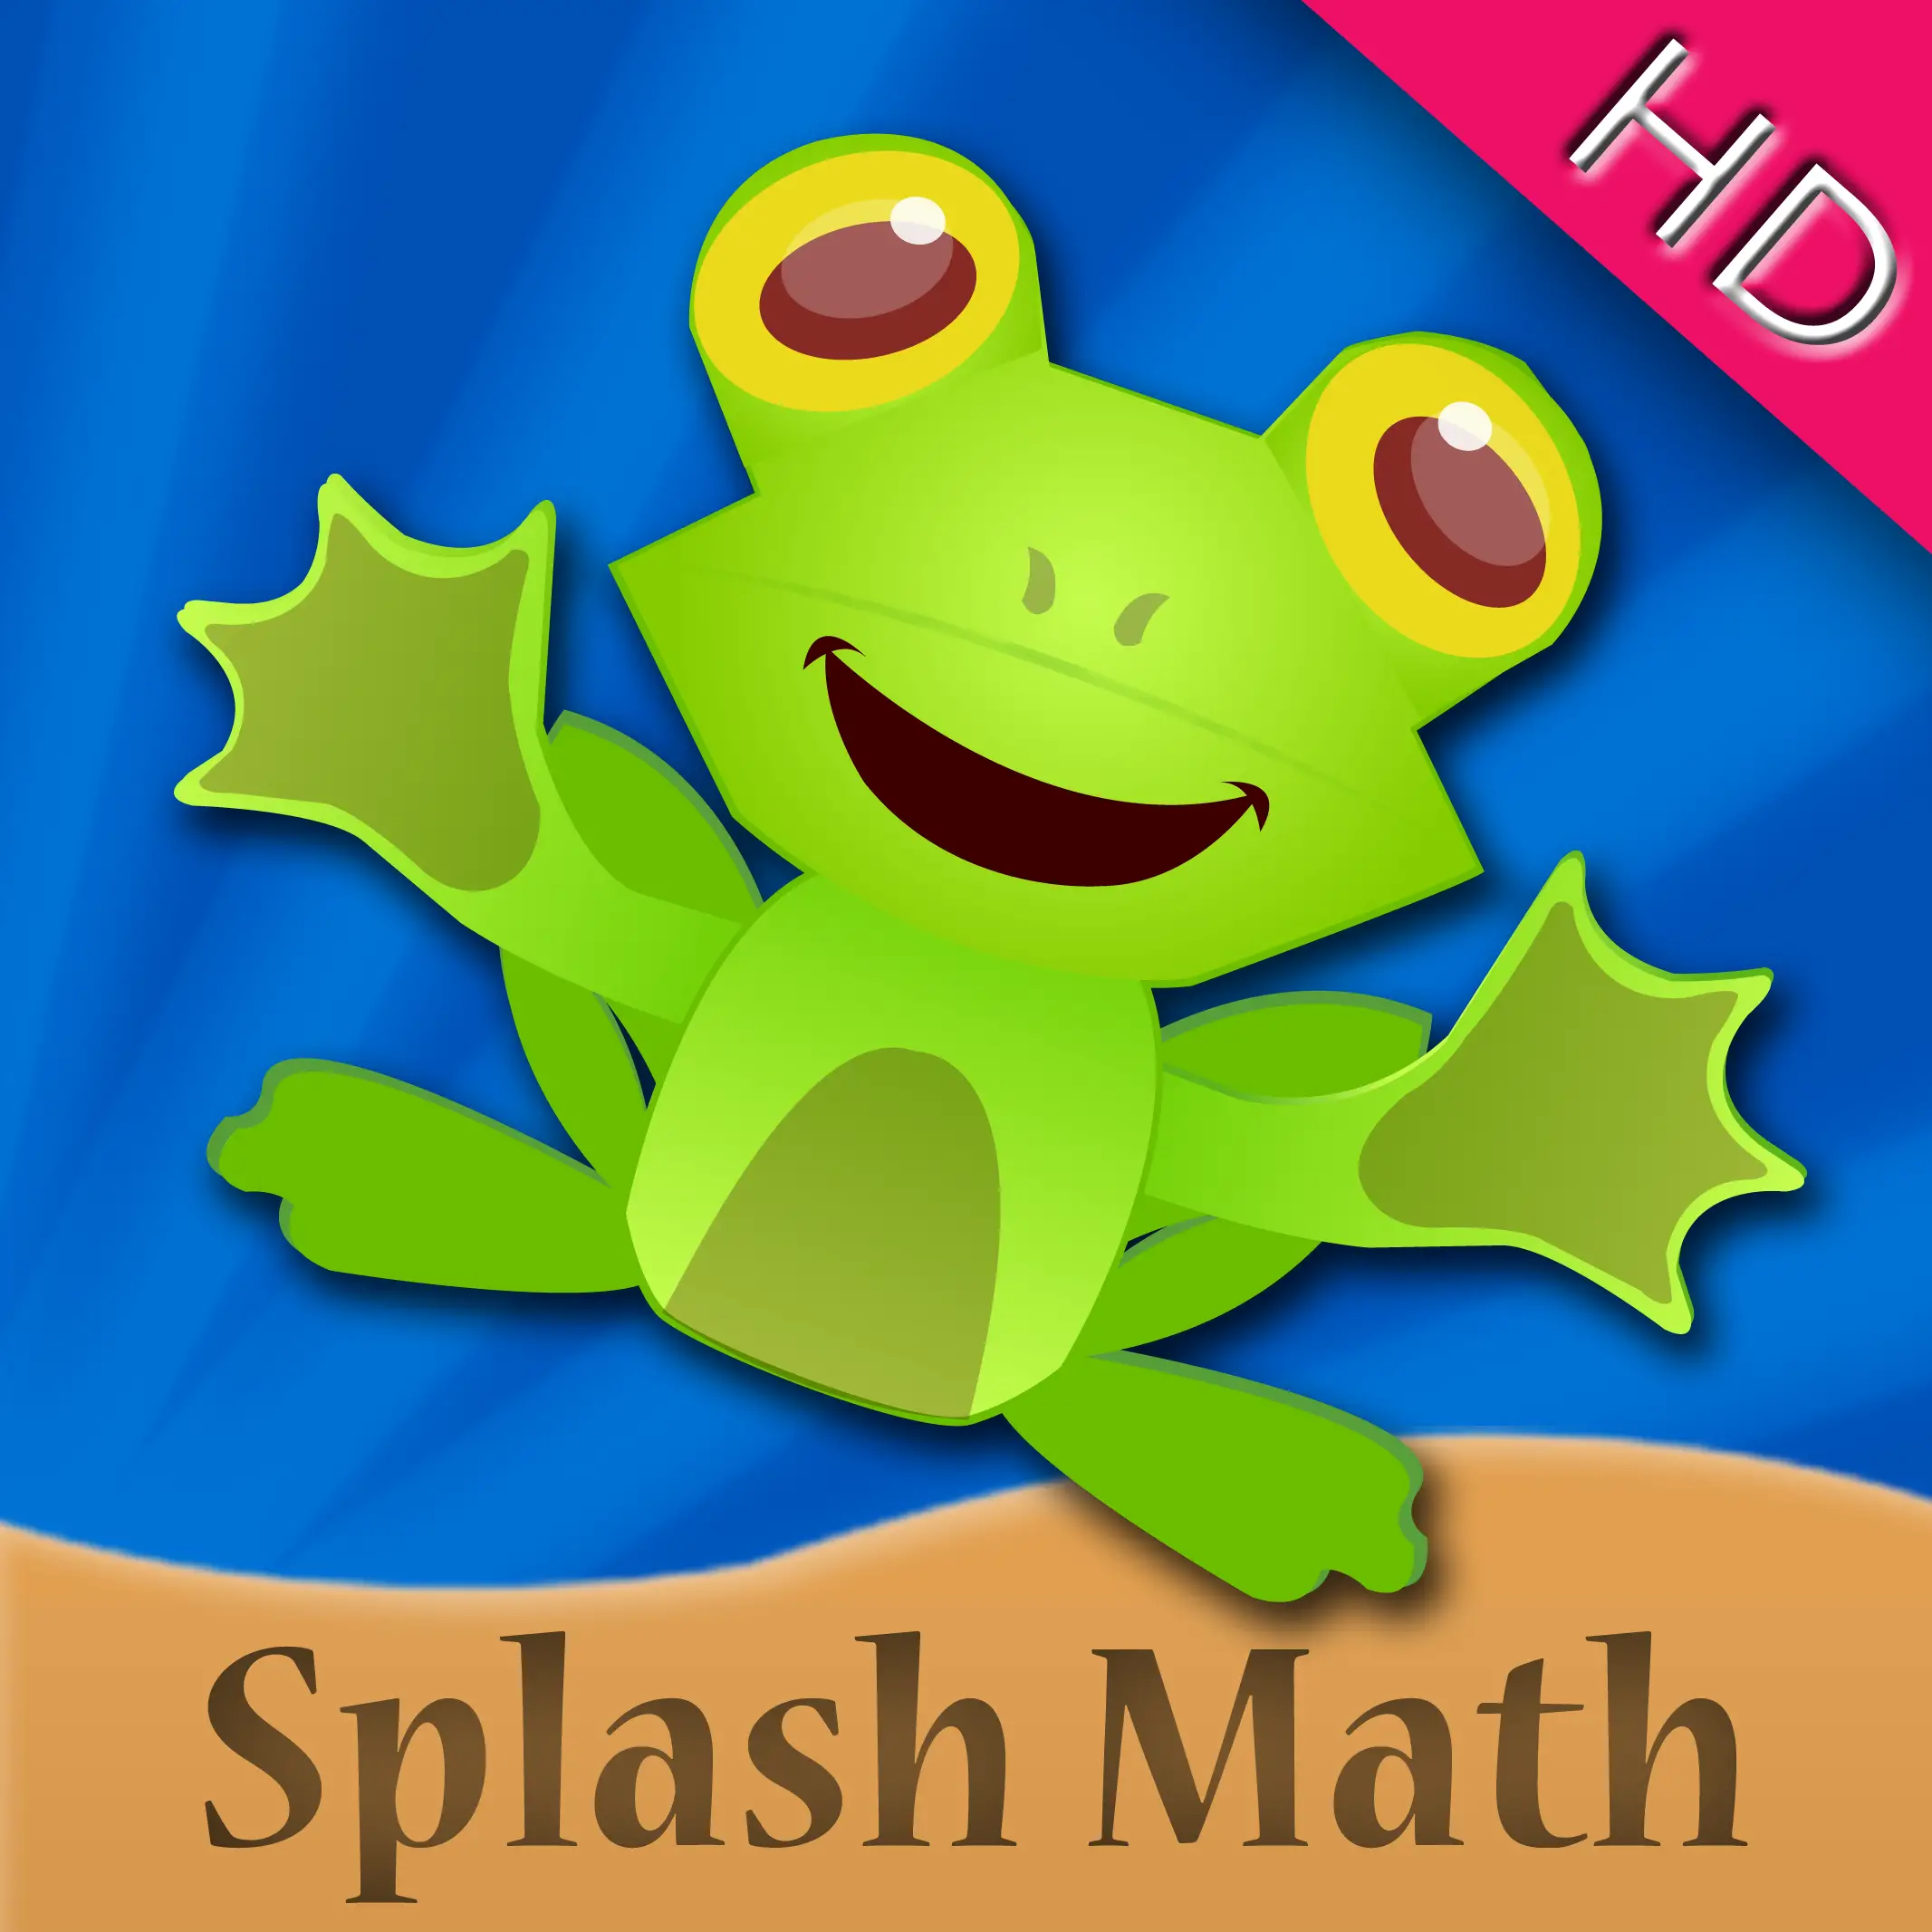 Splash Math is a helpful educational app.